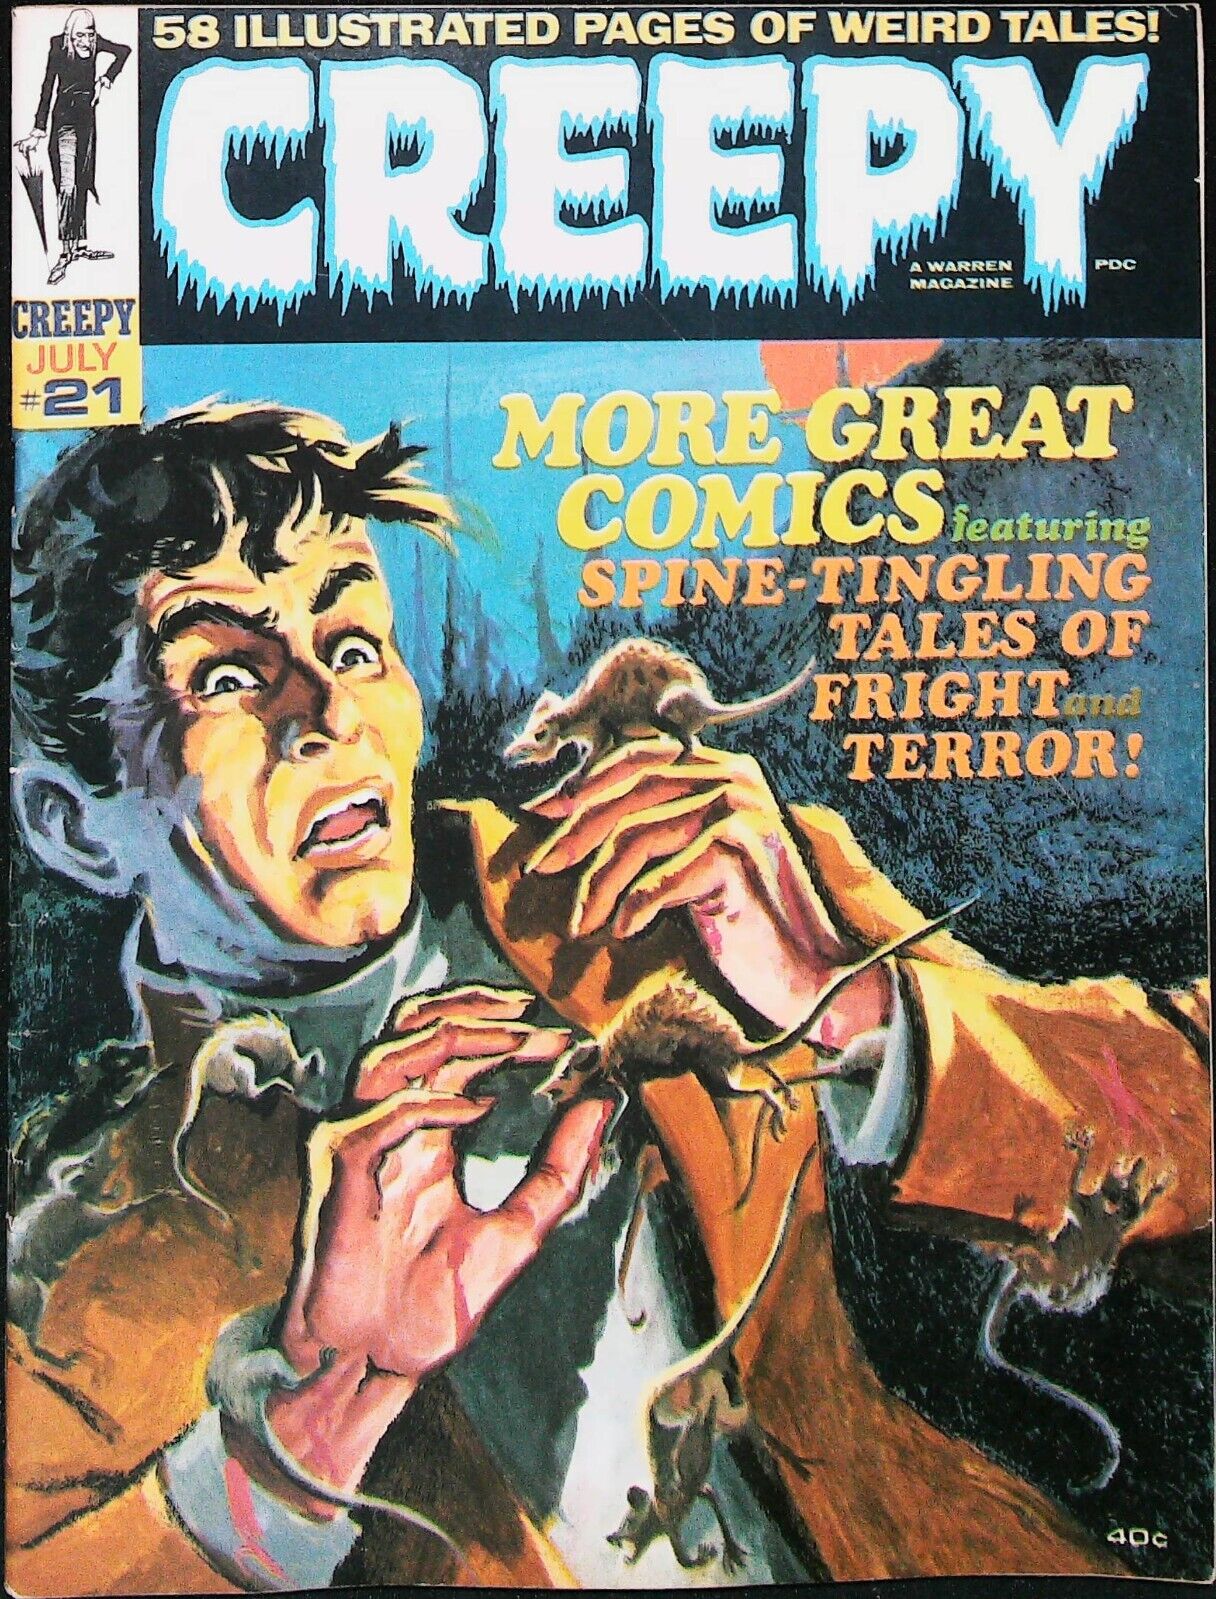 Creepy Magazine #21 Vol 1 (1968) - Very Fine Range